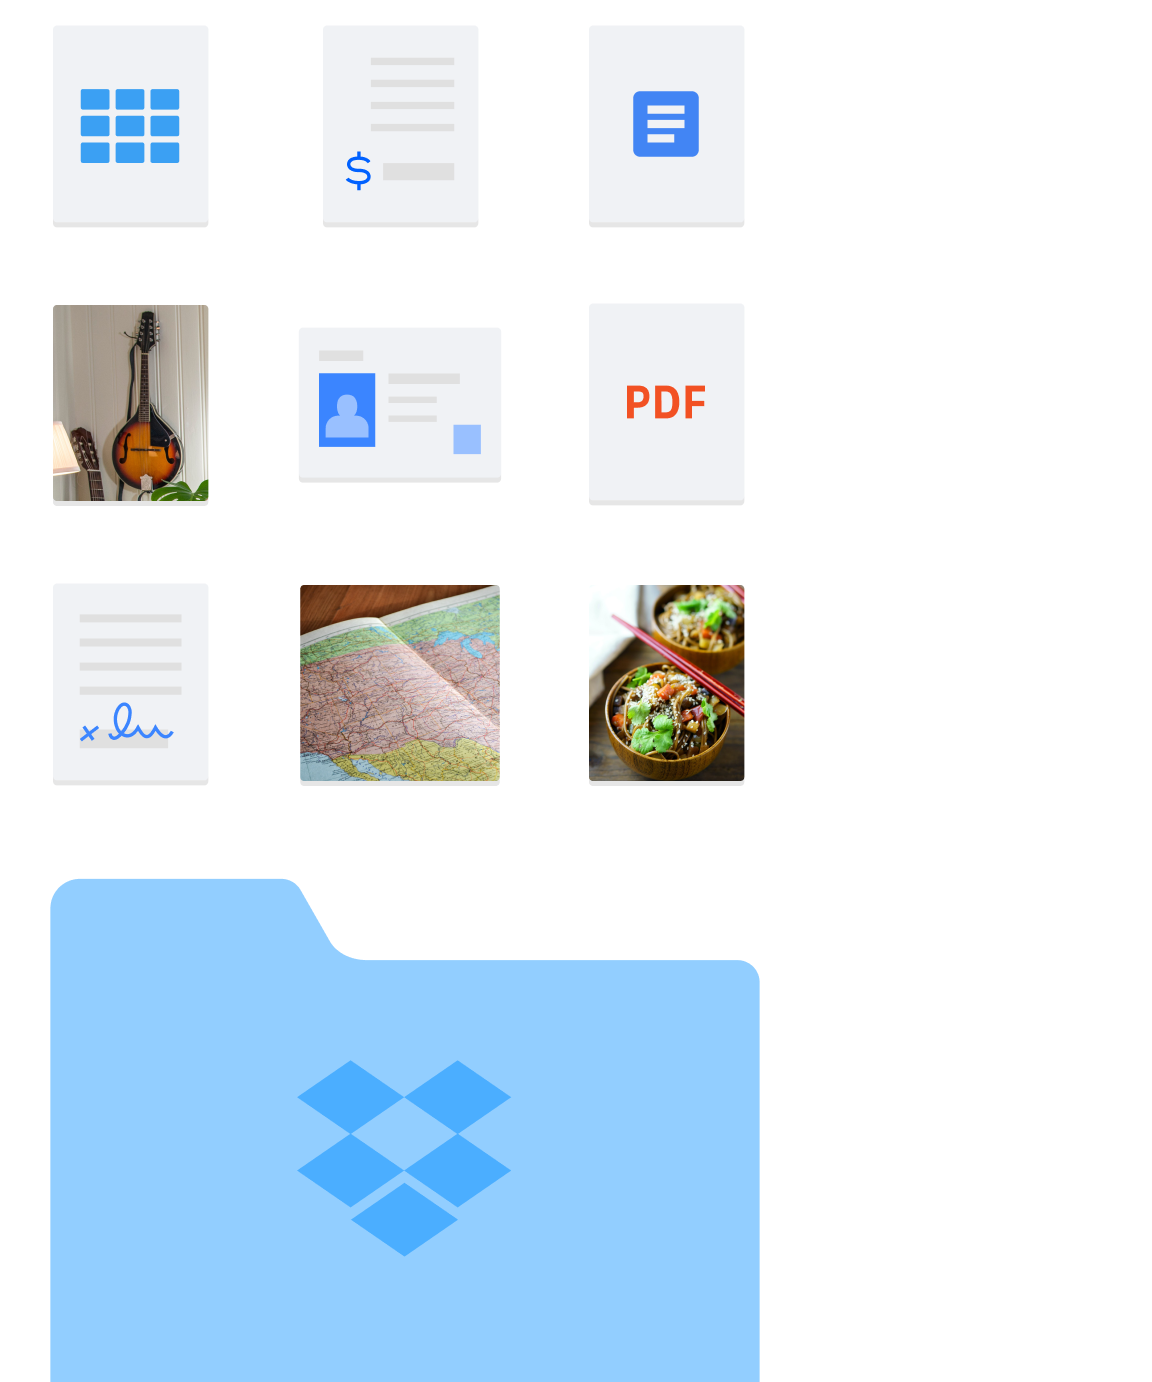 Imagen de varias clases de carpetas y archivos, como imágenes y documentos, contenidos en Dropbox.